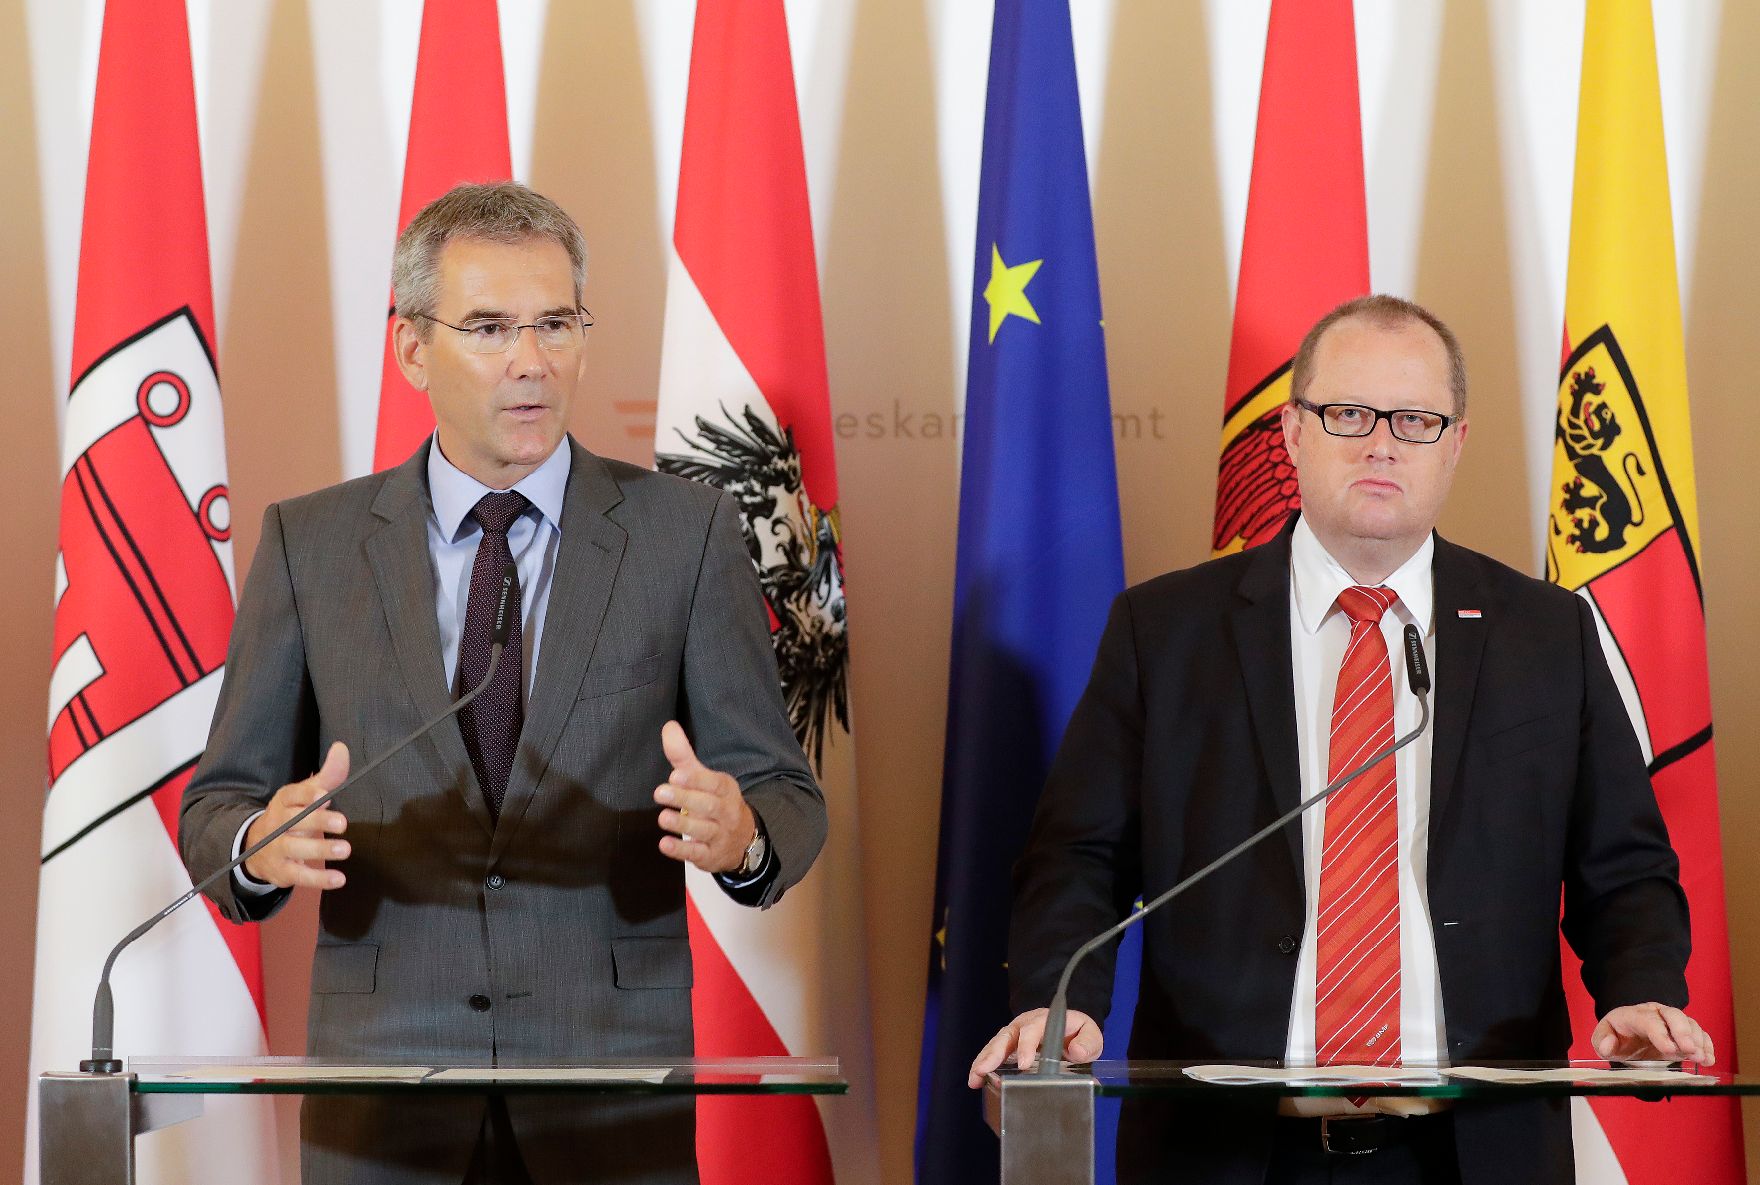 Bundesminister Hartwig Löger (l.) und Staatssekretär Hubert Fuchs (r.) beim Pressefoyer nach dem Ministerrat am 13. Juni 2018.